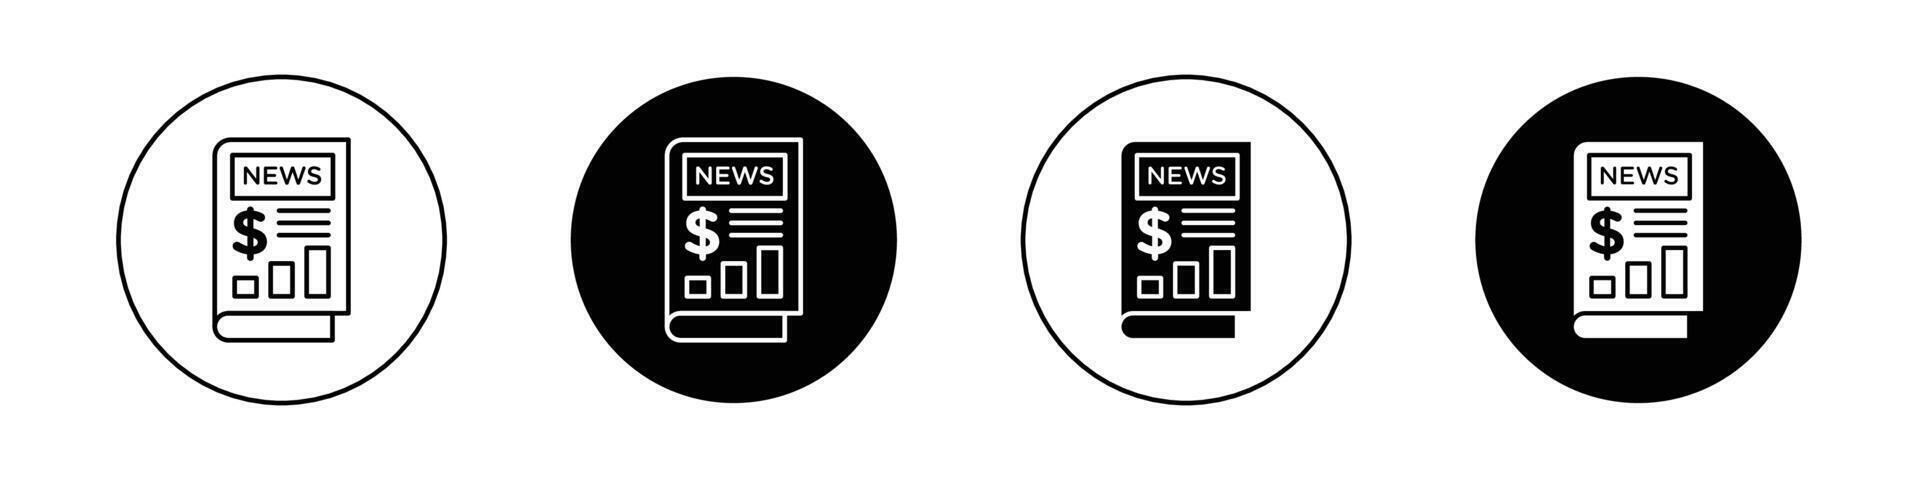 Financial news icon vector